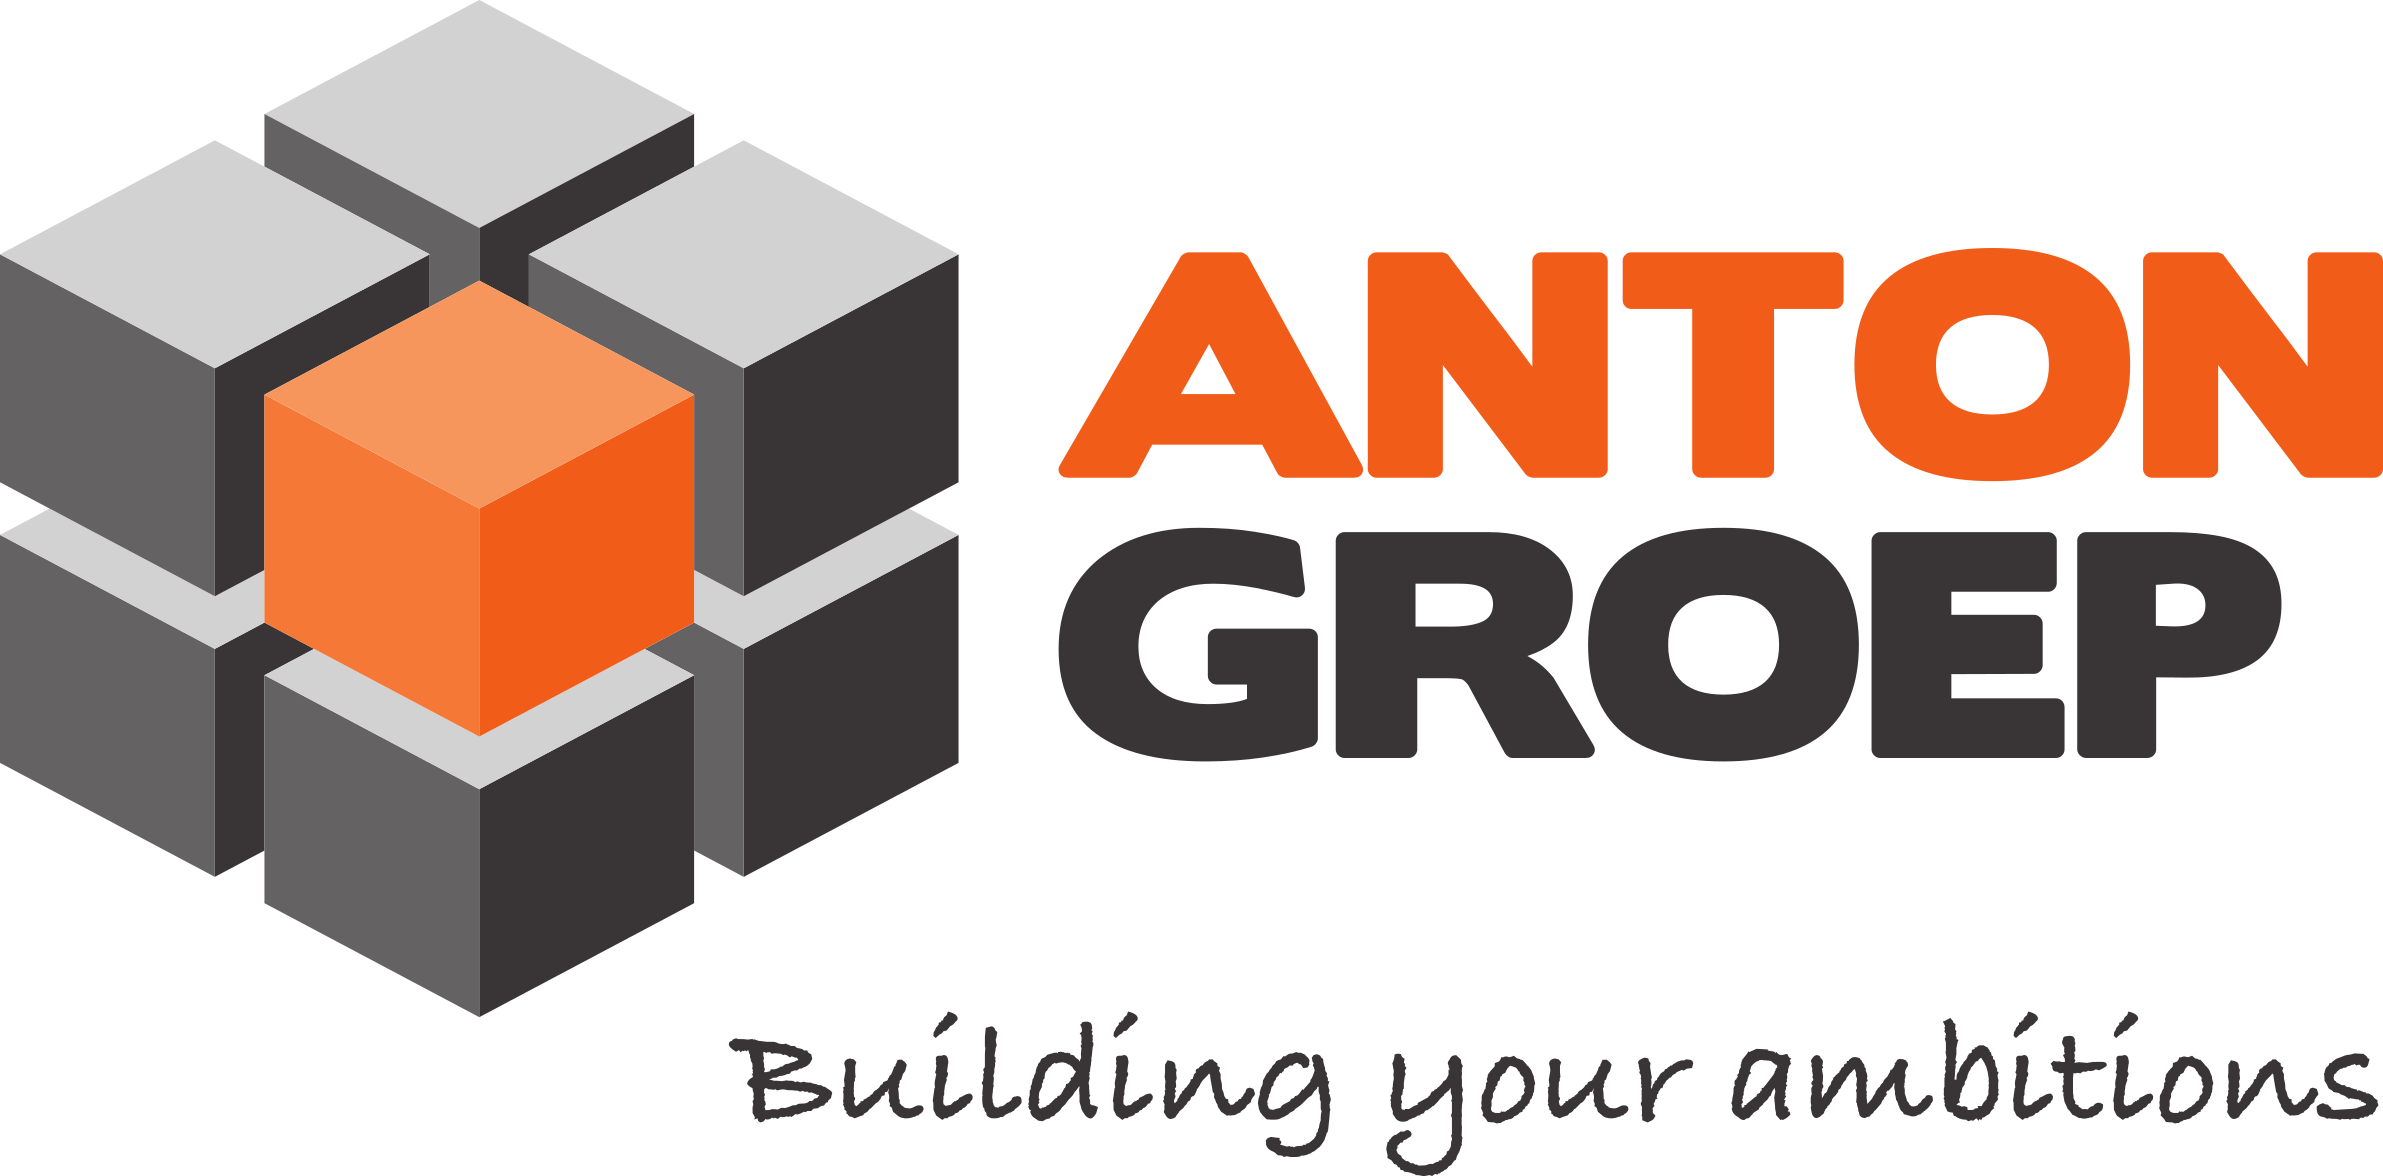 Anton groep